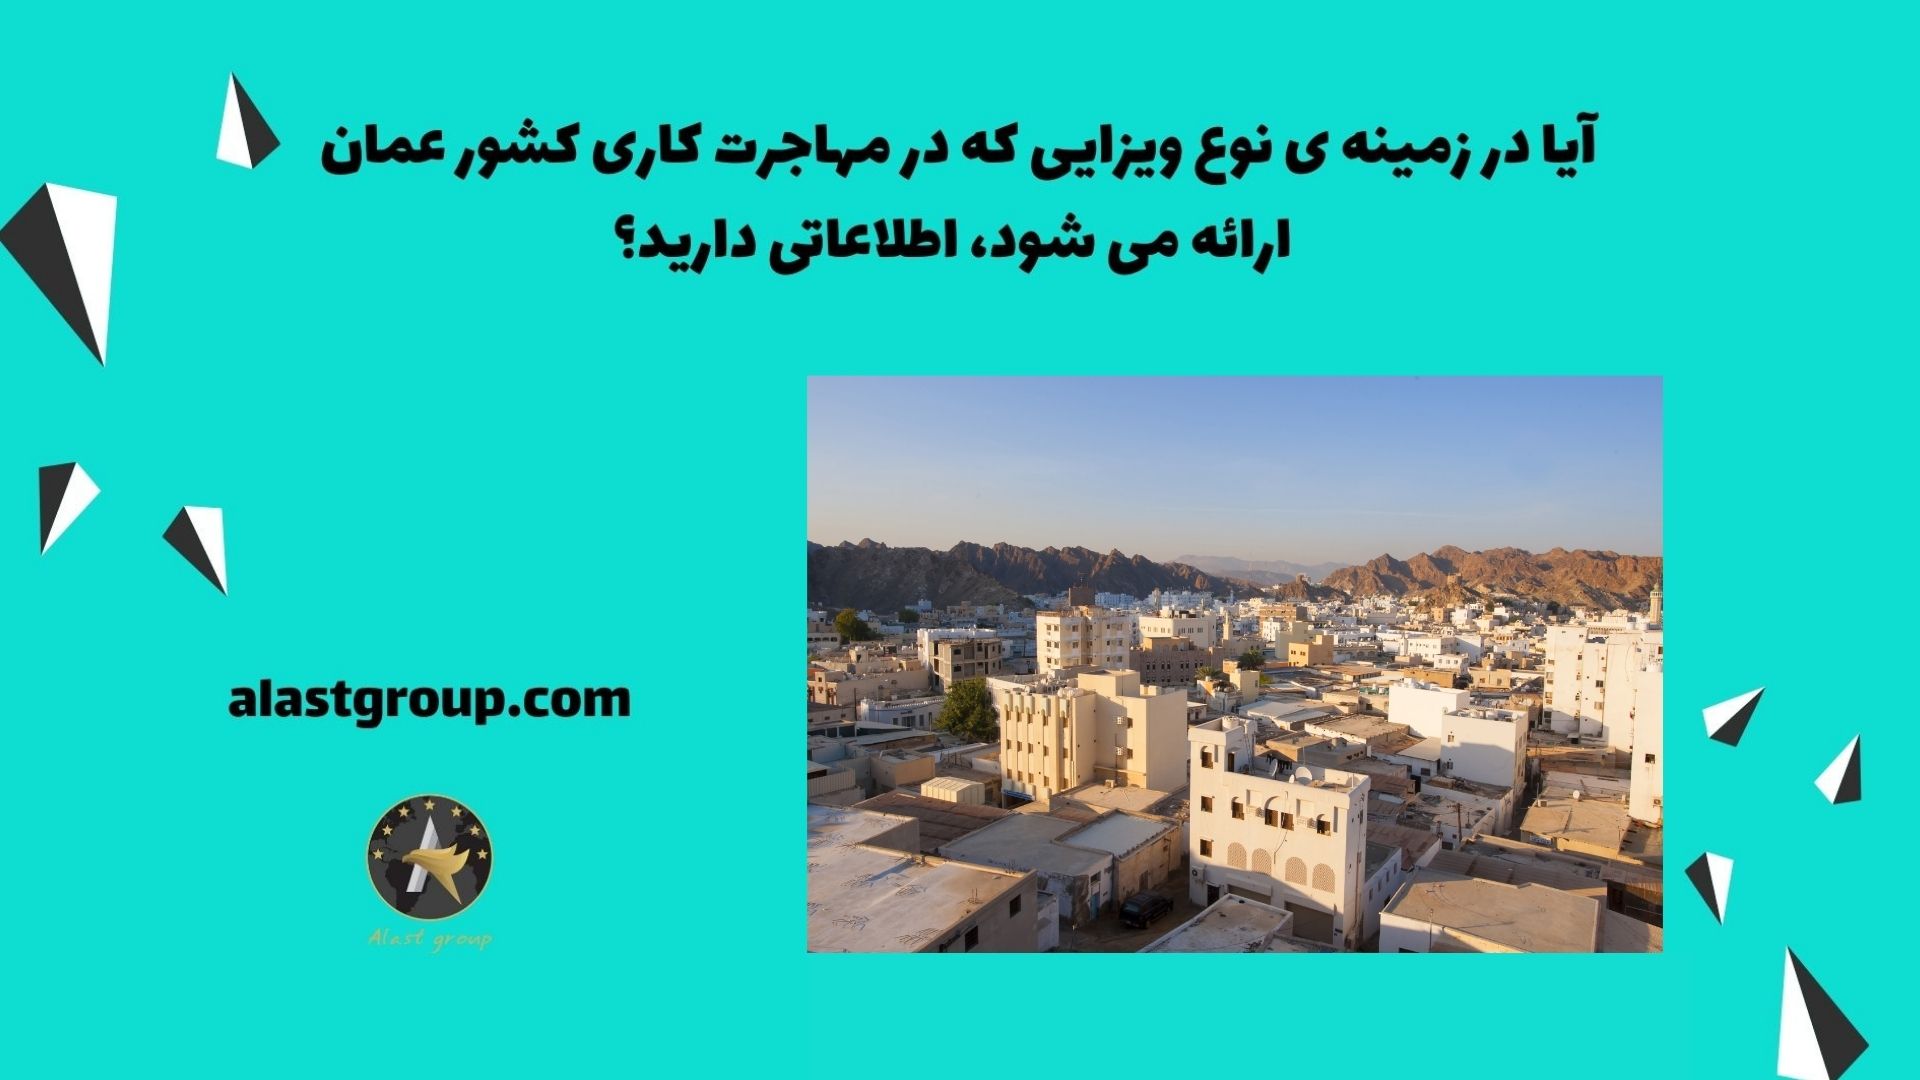 آیا در زمینه ی نوع ویزایی که در مهاجرت کاری کشور عمان ارائه می شود، اطلاعاتی دارید؟